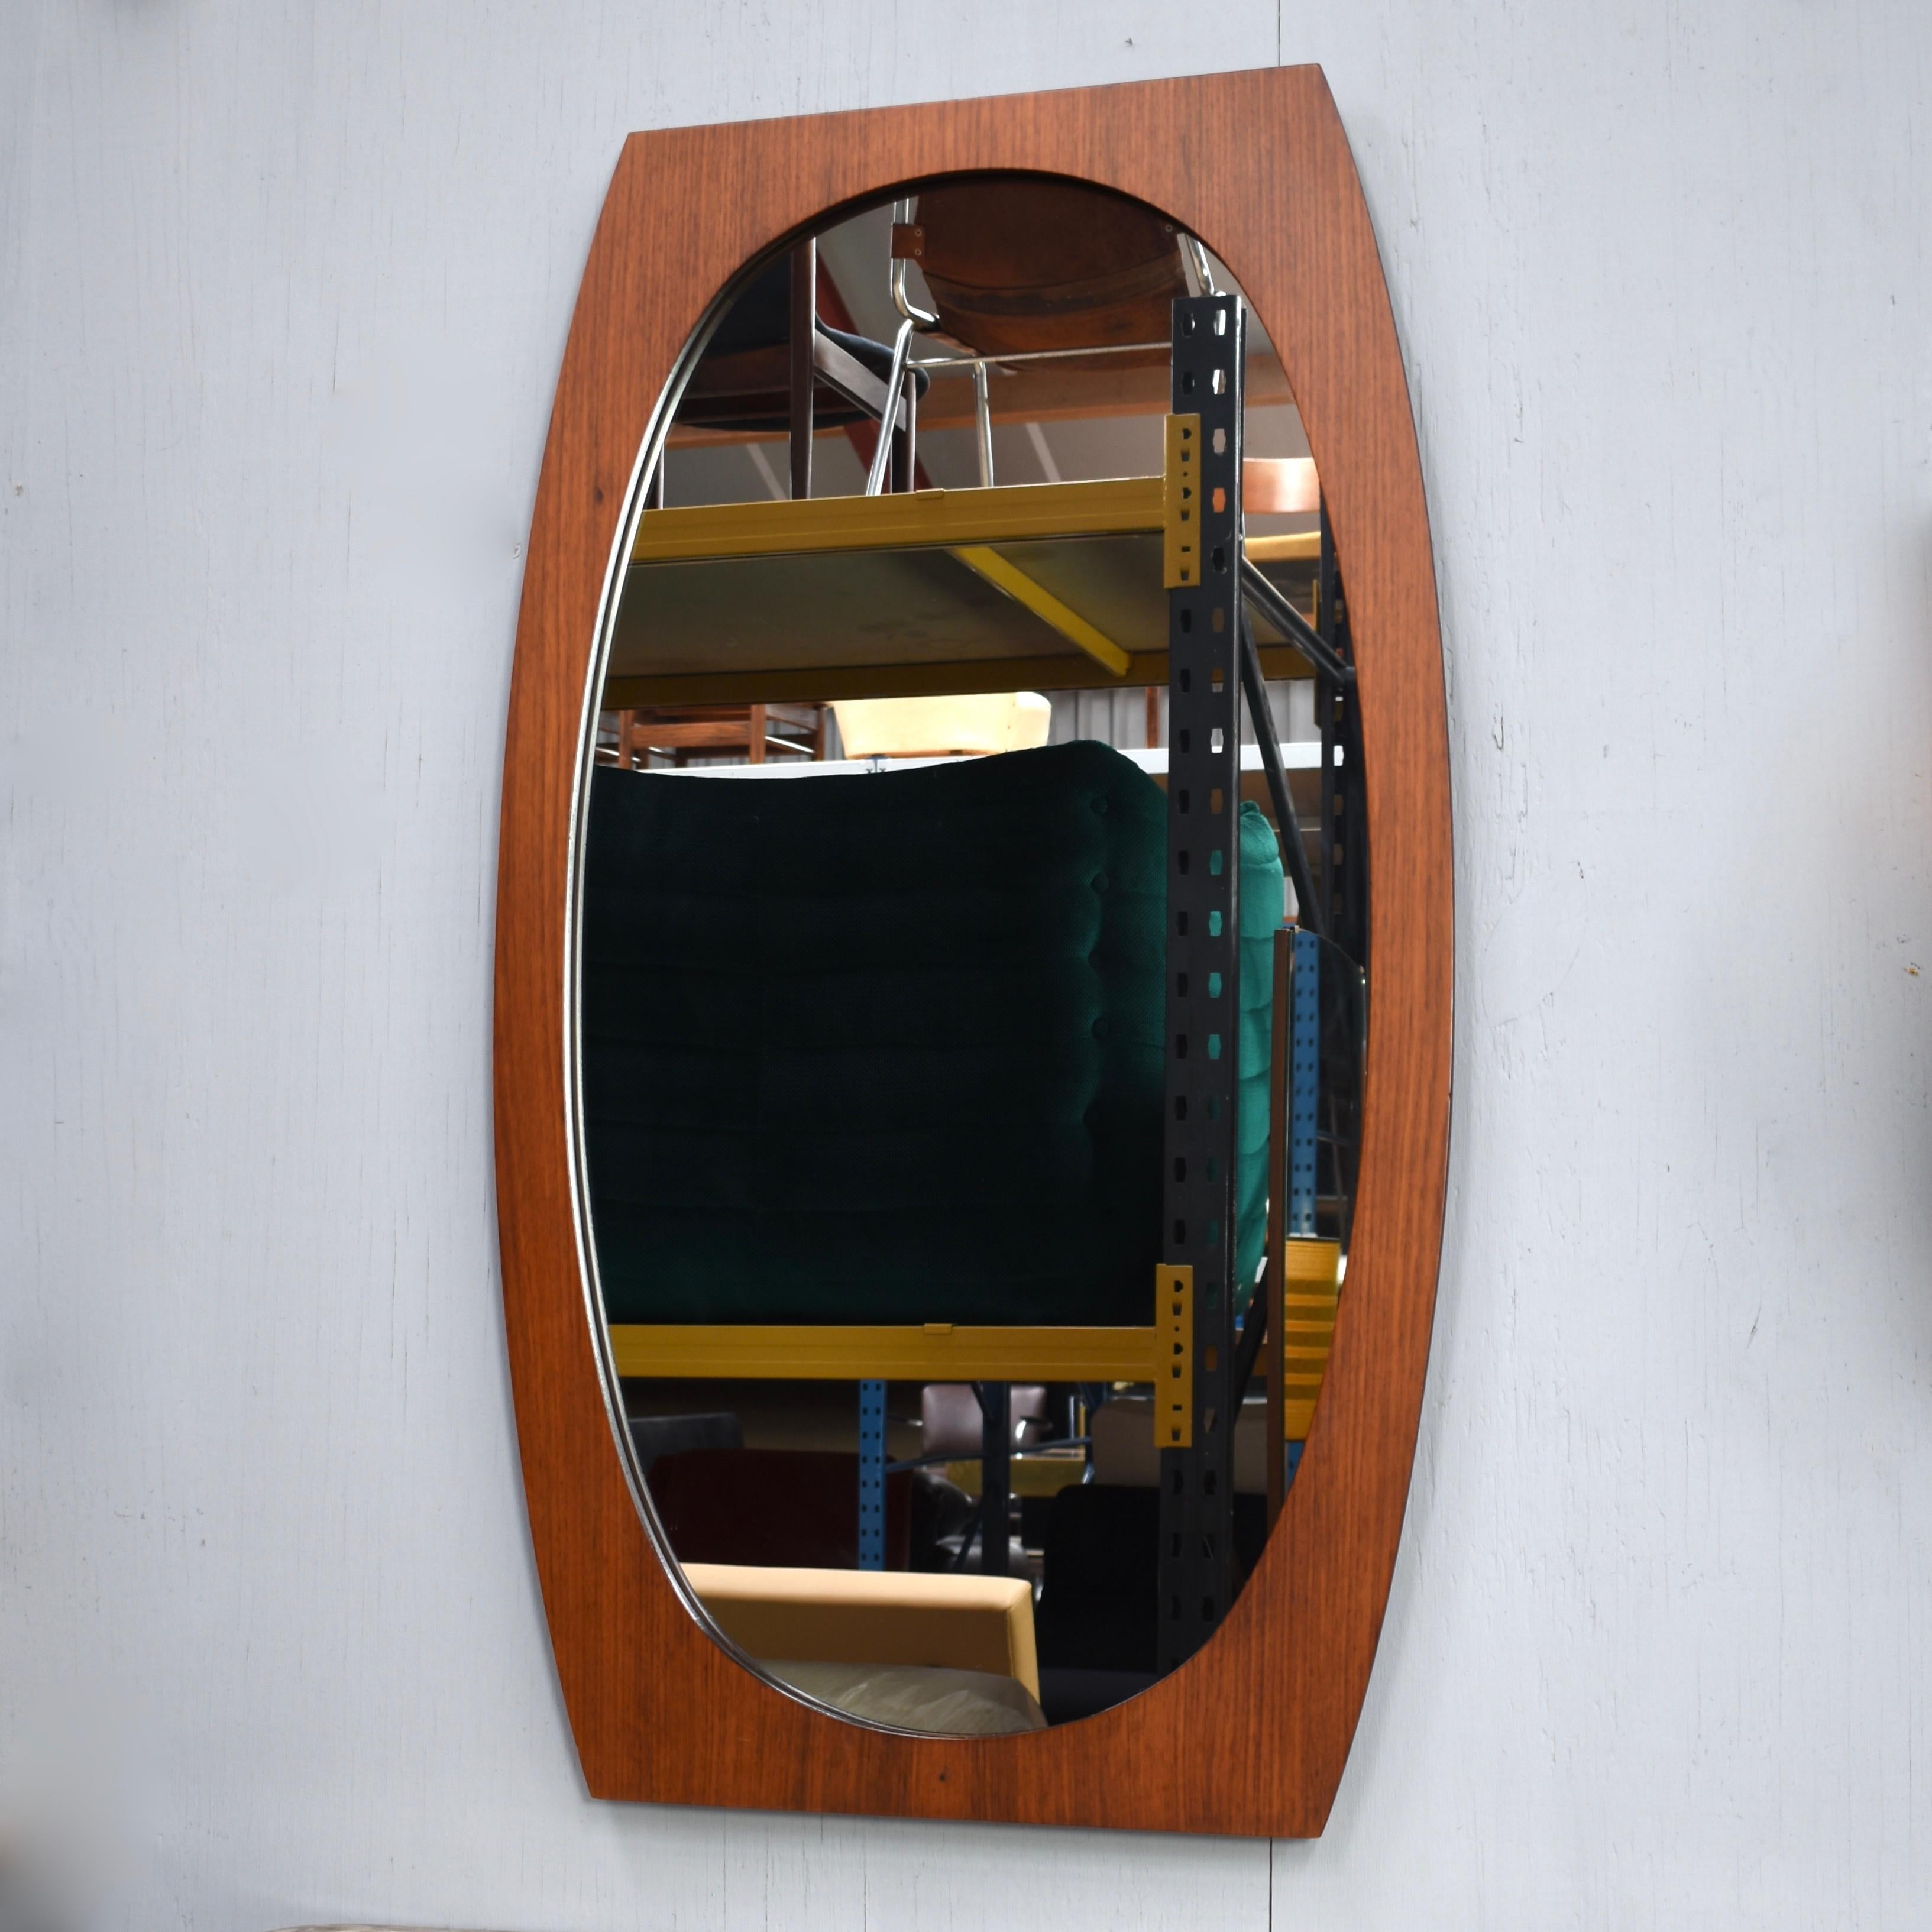 Italienischer Spiegel aus Teakholz, 1950er Jahre. Der Holzrahmen ist aus einem Stück massivem Teakholz gefertigt.

Designer: Unbekannt

Hersteller: Unbekannt

Land: Italien

Modell: Spiegel

Gestaltungszeitraum: um